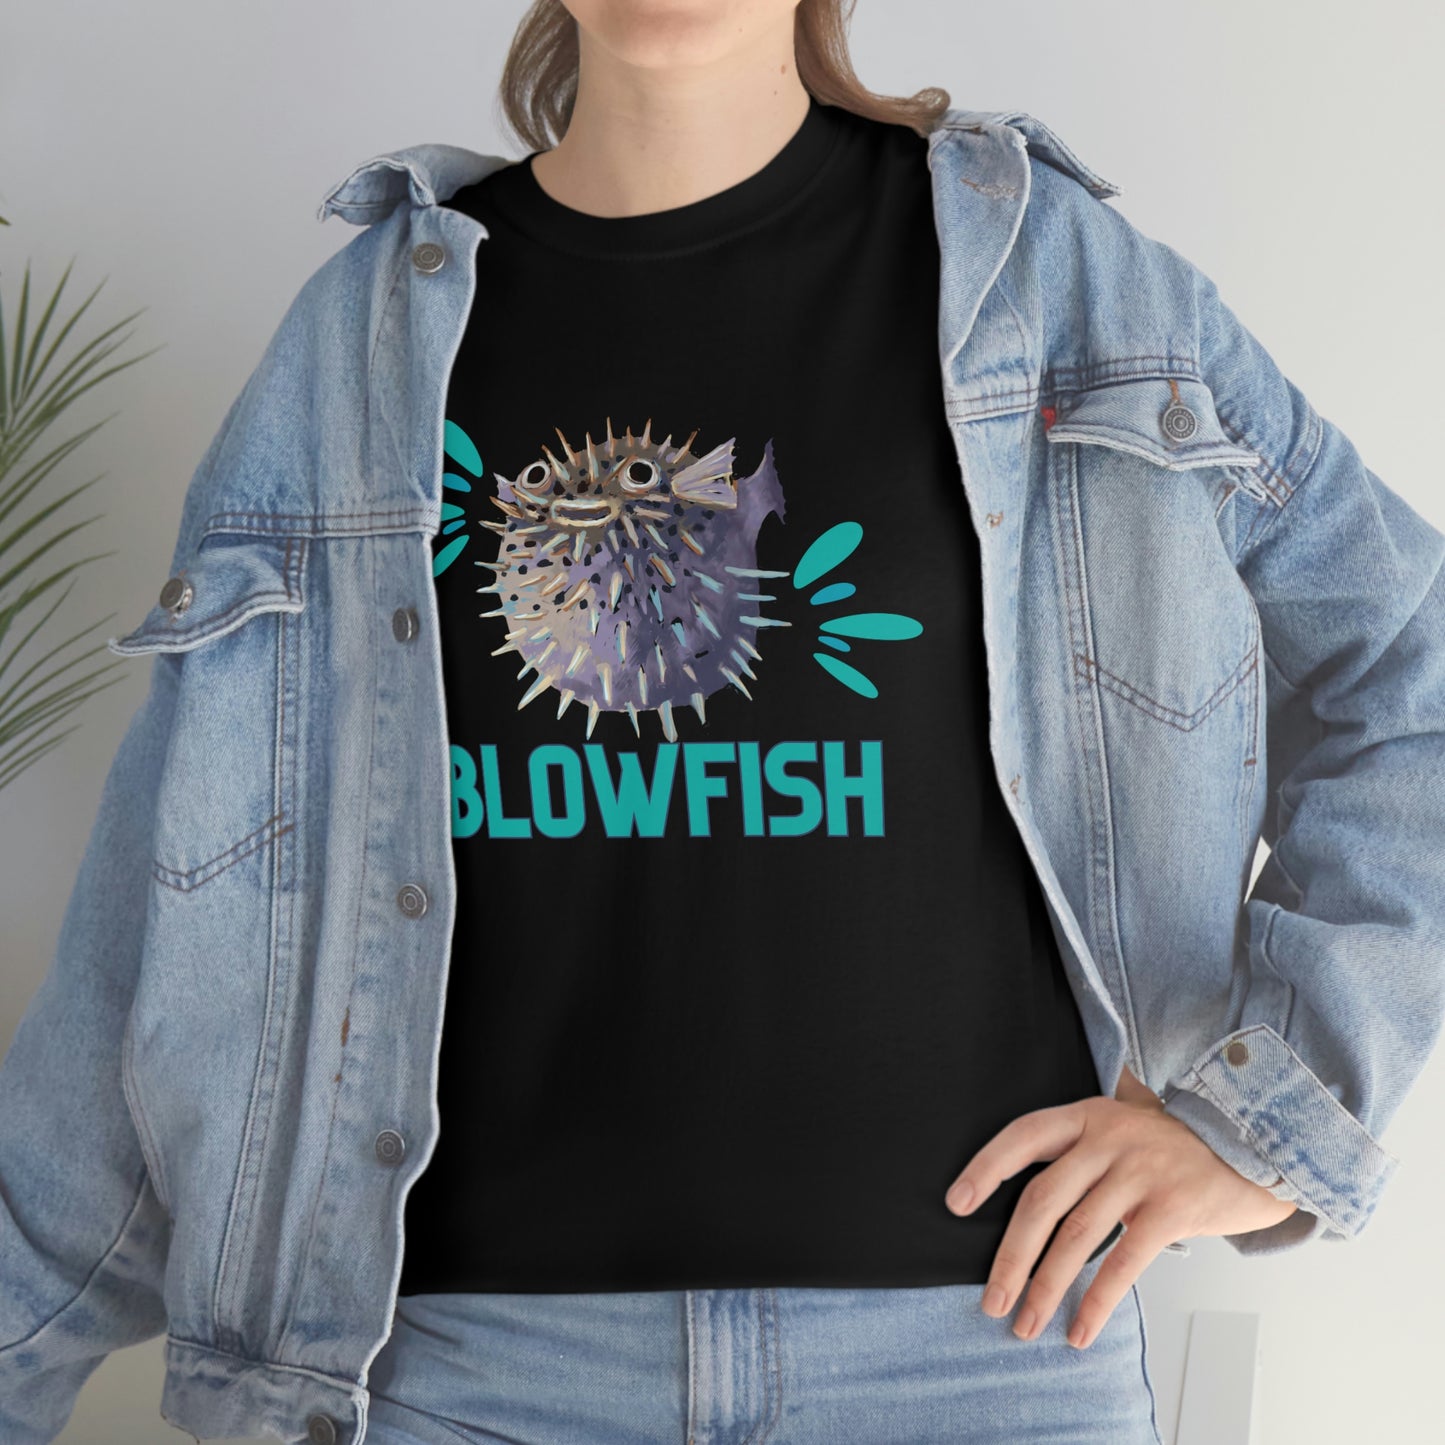 Cute Fun Blowfish with splush design white Cotton Tee